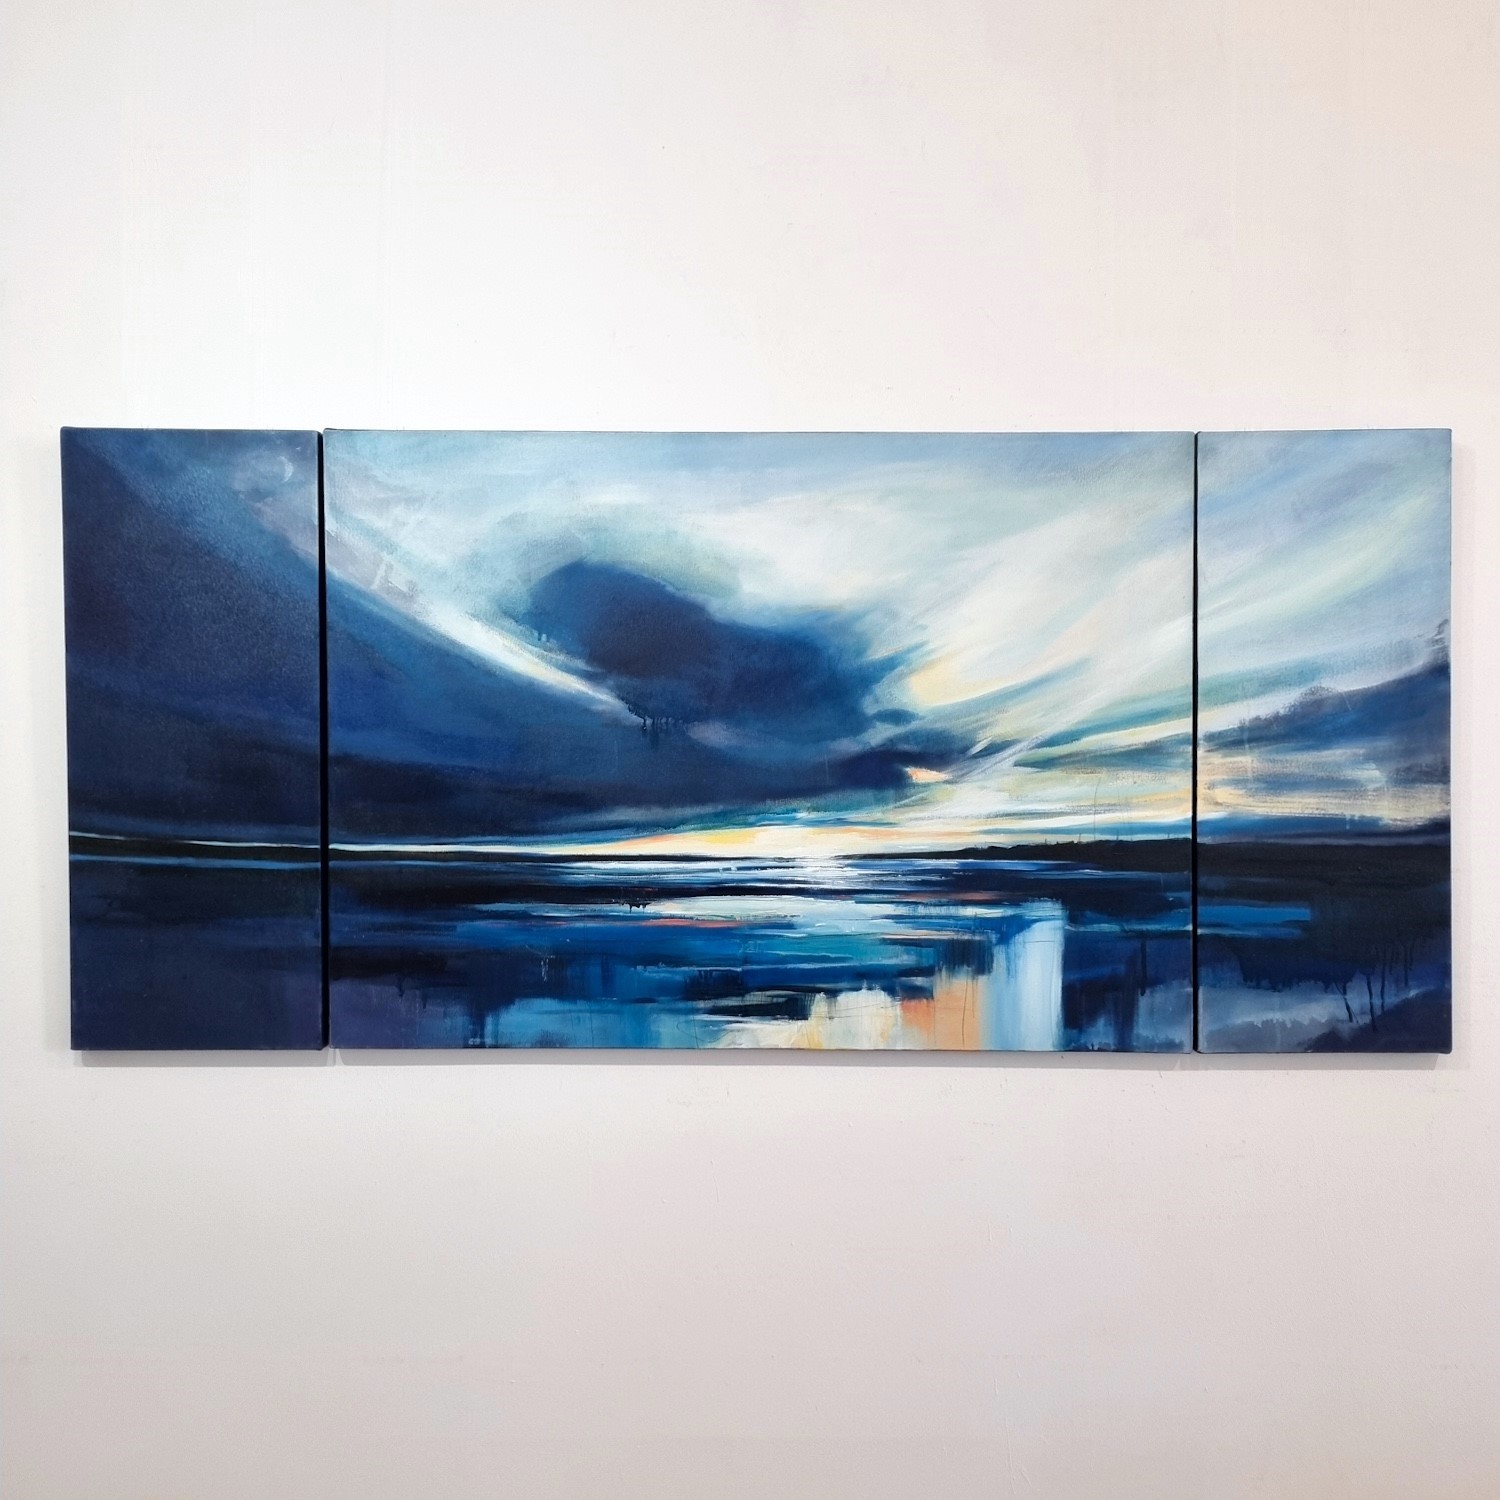 'Dusk Over Largo Bay' by artist Sarah Carrington